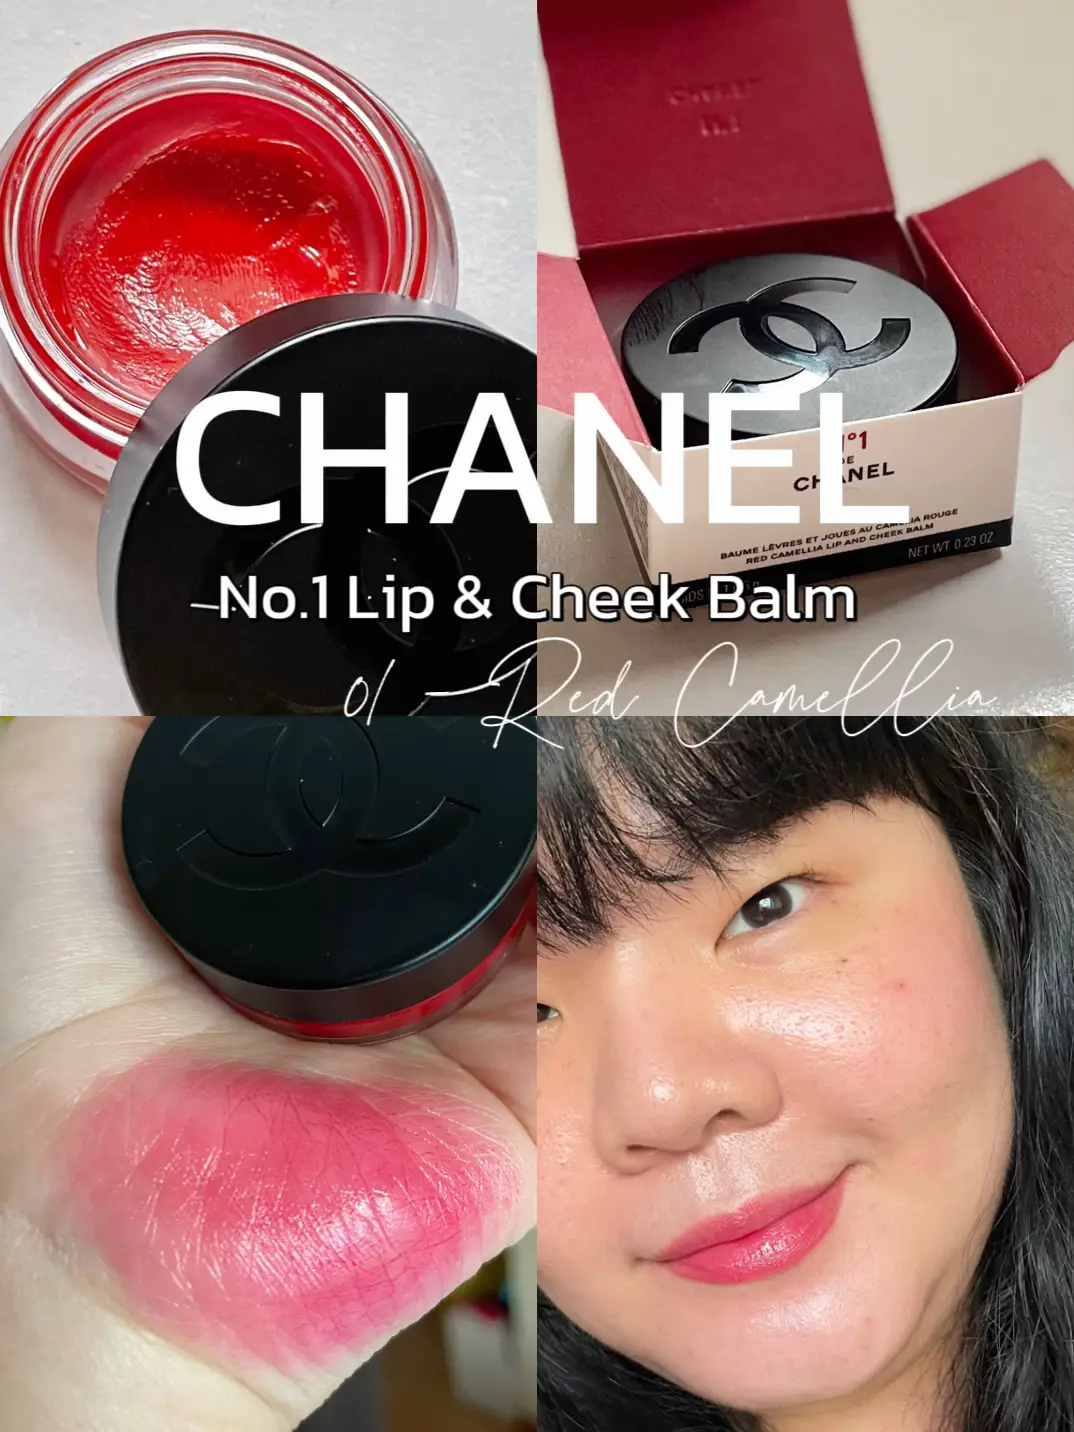 รีวิว CHANEL no.1 Lip & Cheek Balm สี 01 Red Camellia, Gallery posted by  lipstickfairy